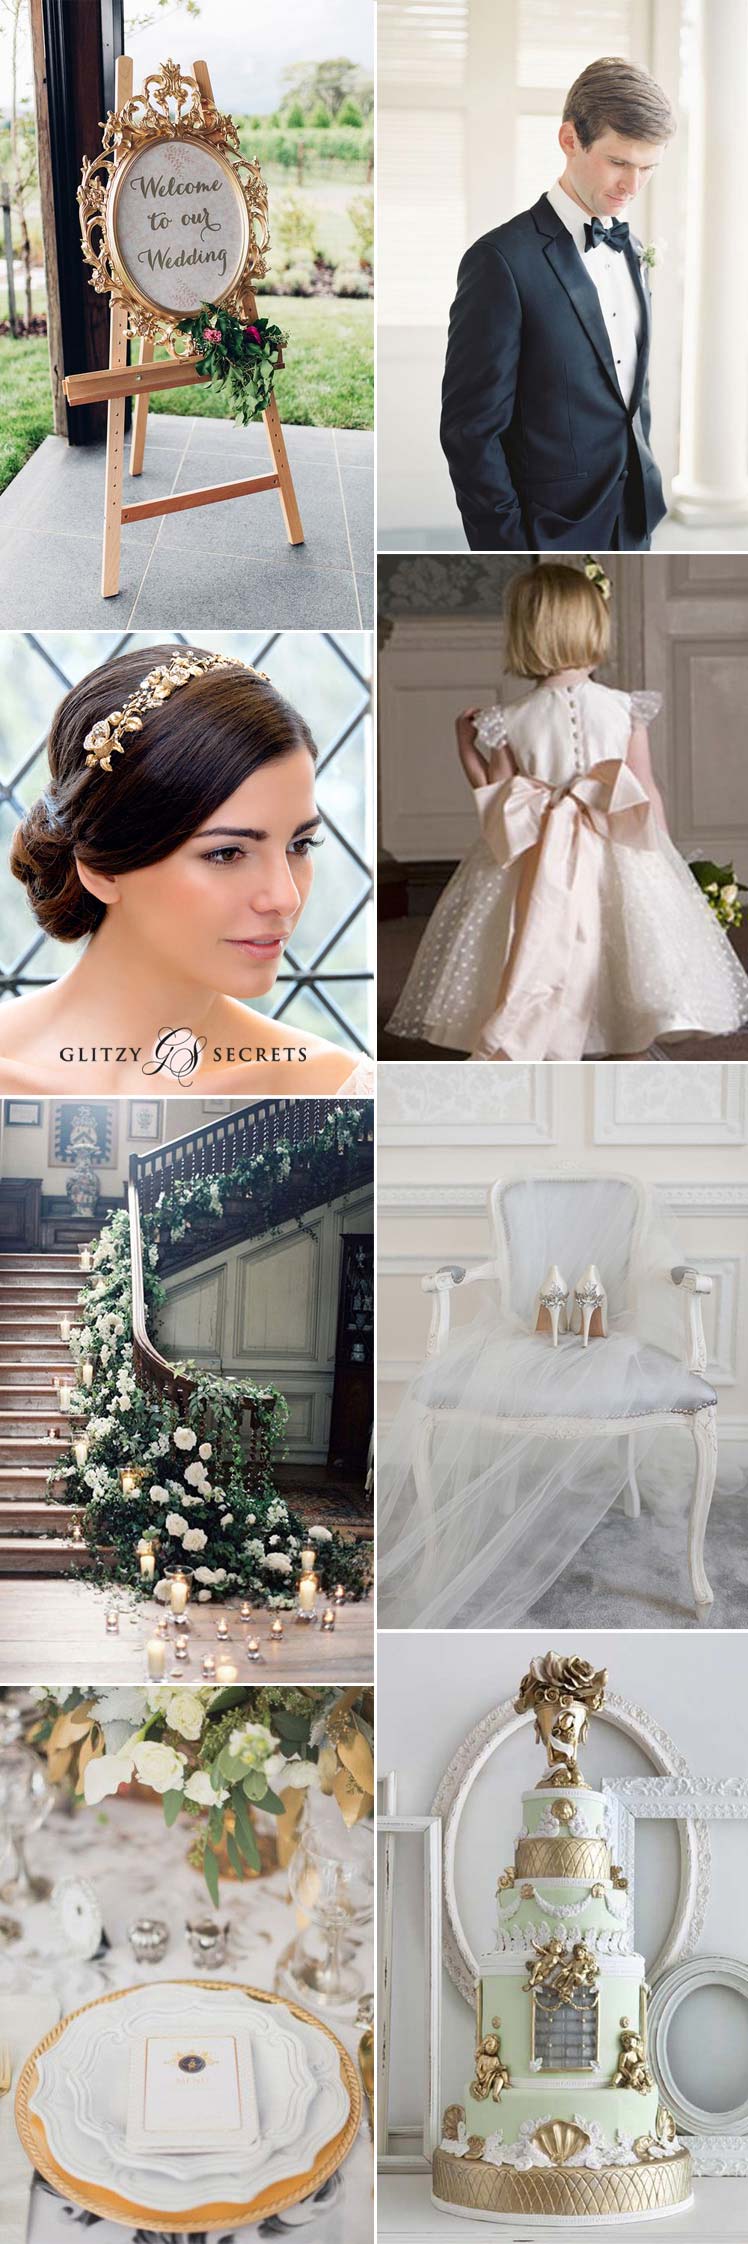 Beautiful regal wedding ideas for modern brides